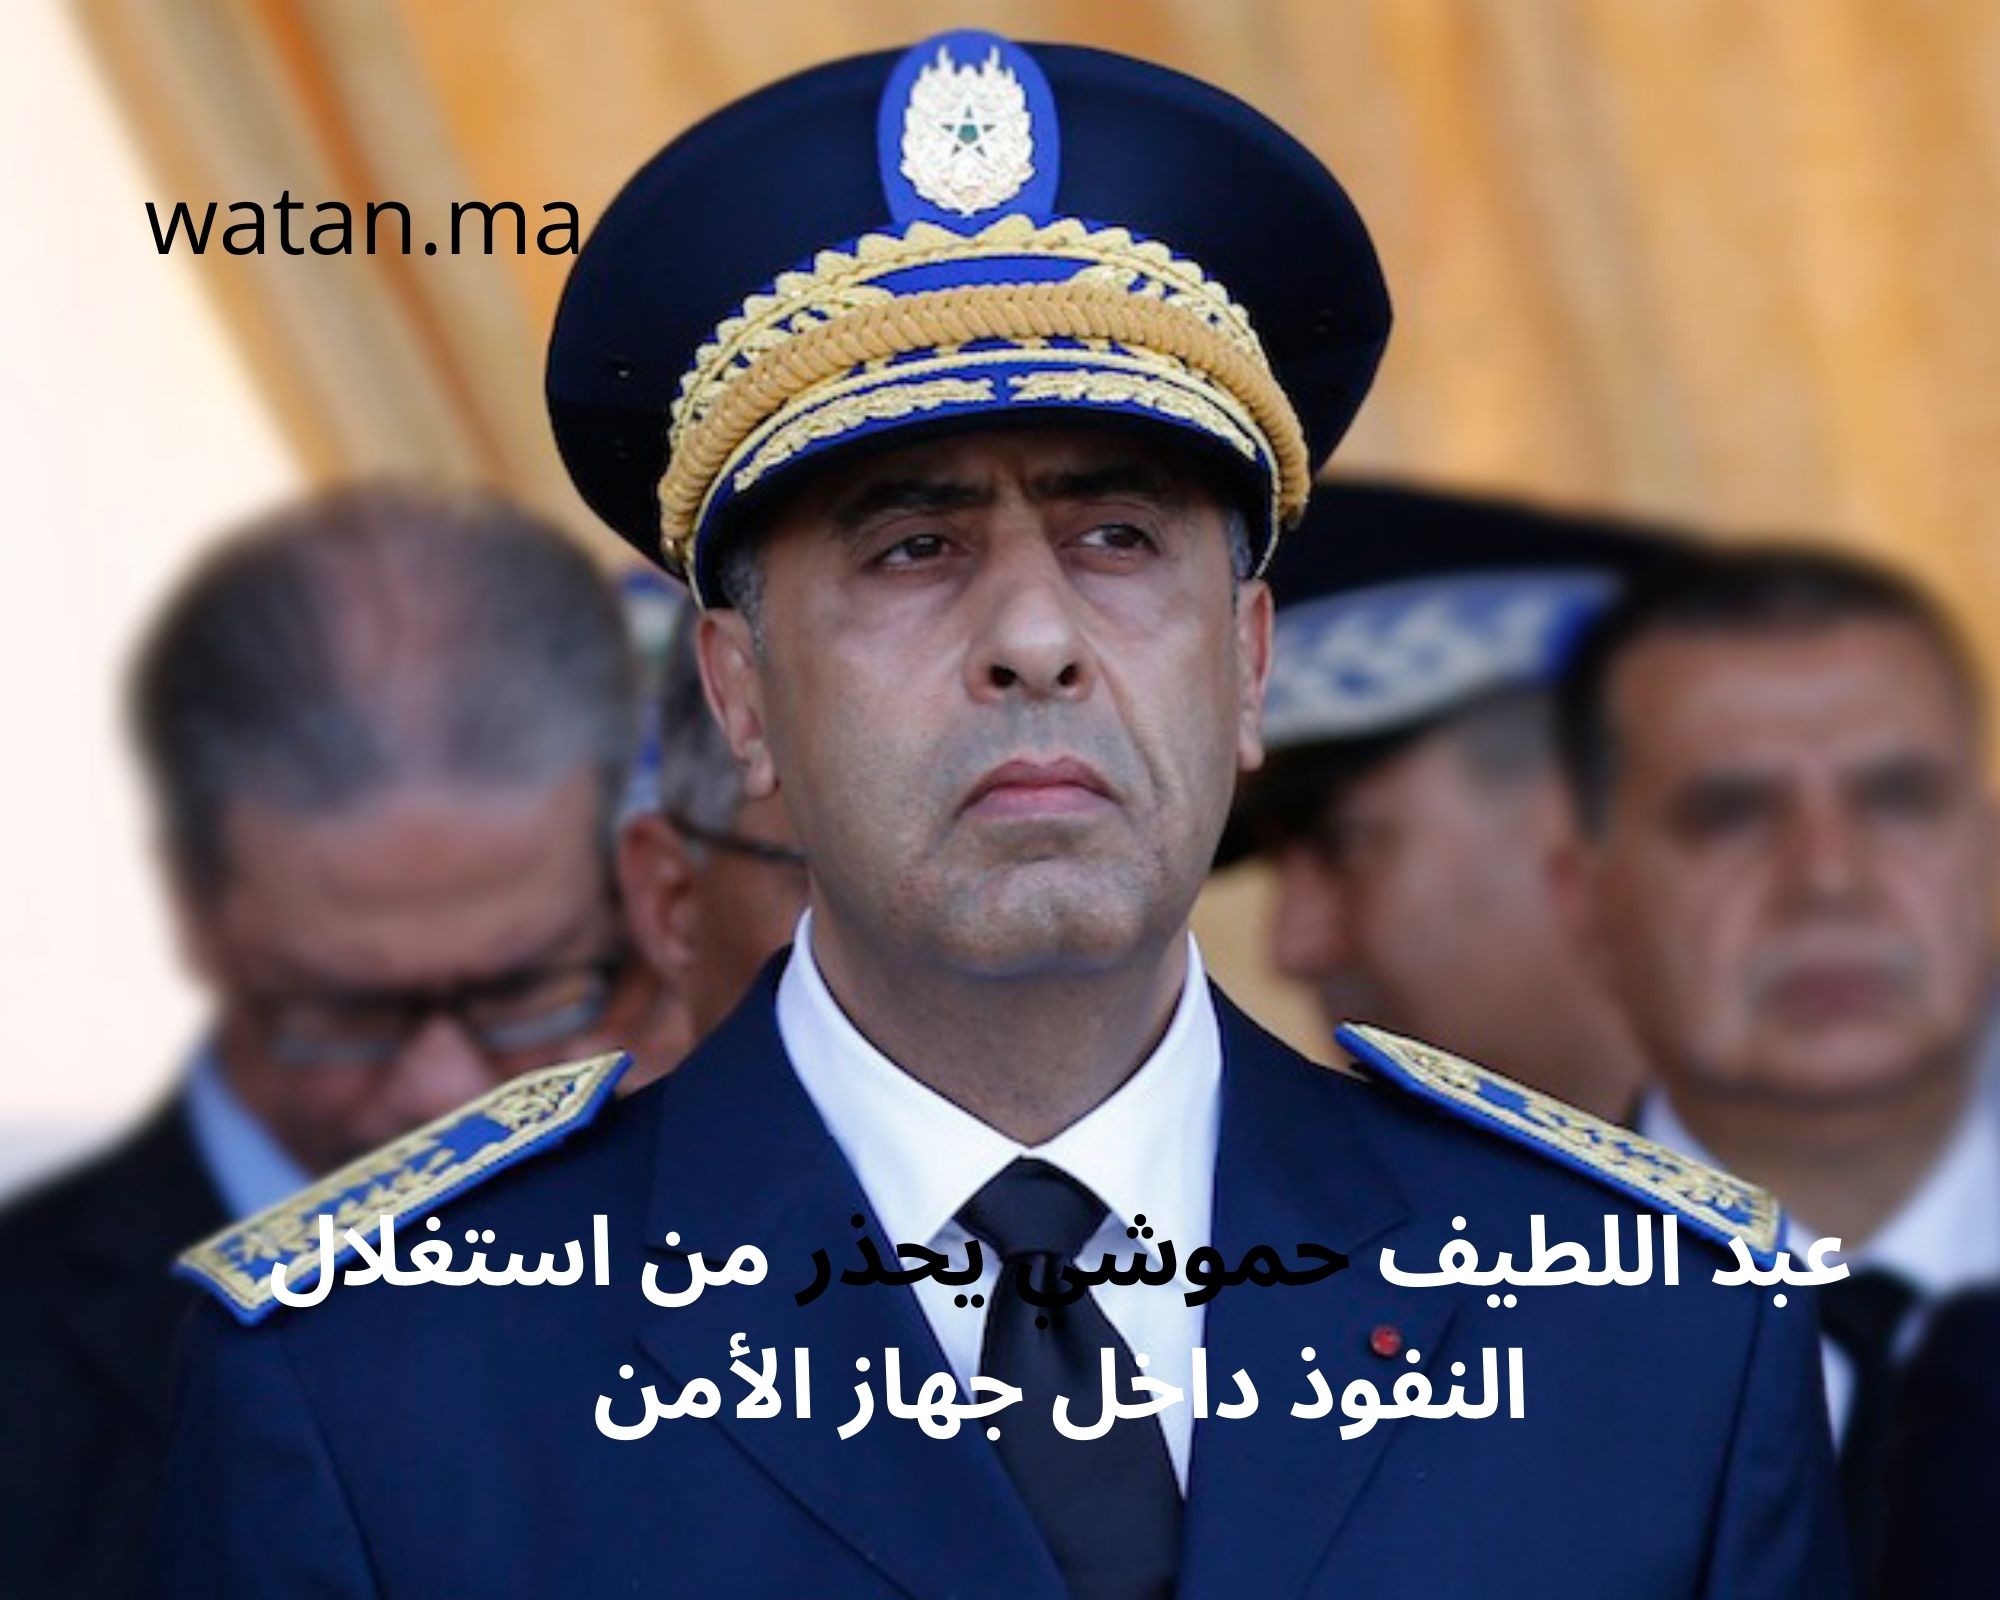 عبد اللطيف حموشي يحذر من استغلال النفوذ داخل جهاز الأمن